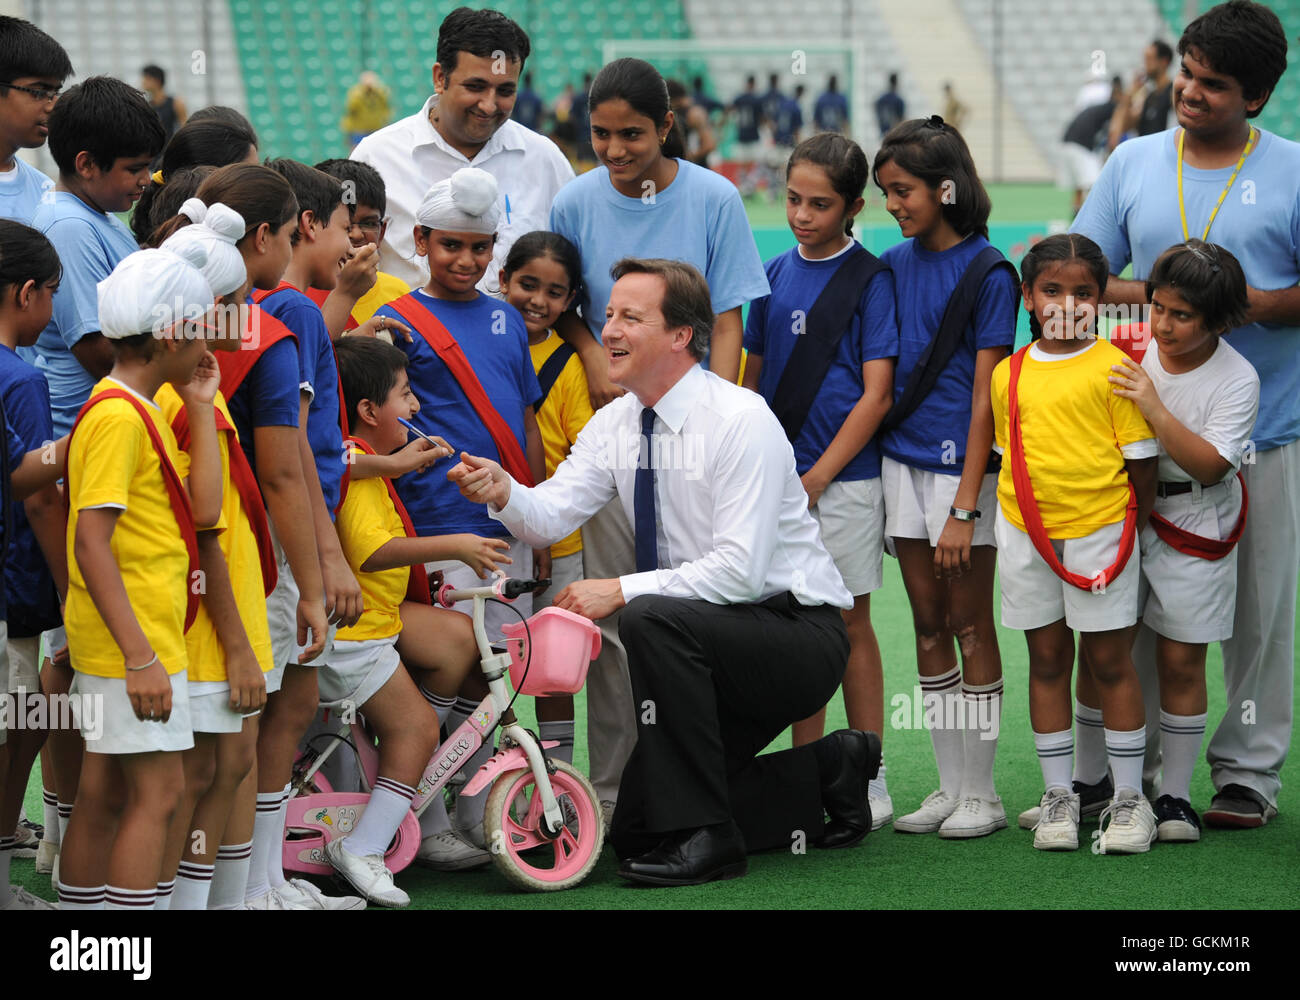 Il primo ministro David Cameron incontra i bambini delle scuole locali al Major Dhyan Chand National Hockey Stadium di Delhi, l'ultimo giorno di una gita di tre giorni in India. Foto Stock